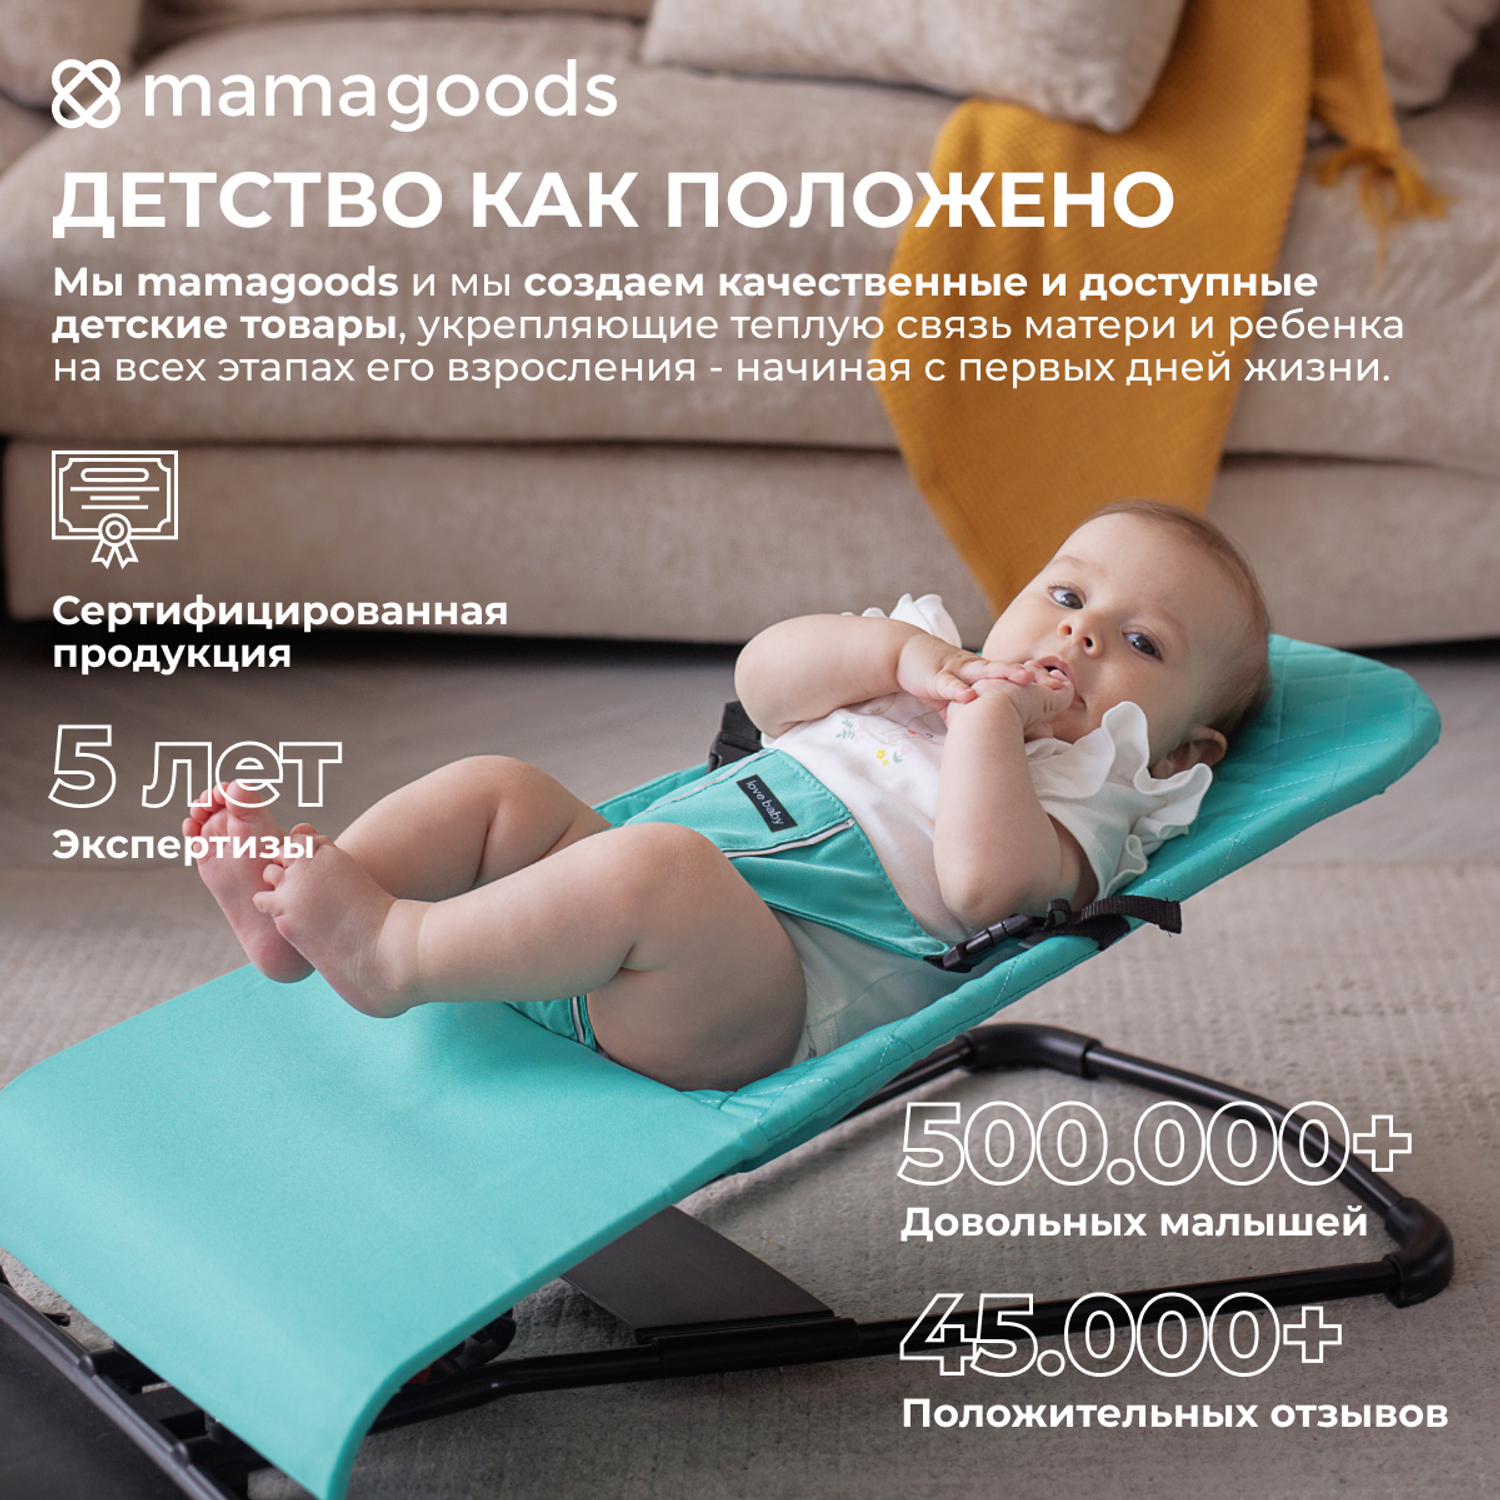 Детский складной шезлонг Mamagoods для новорожденных от 0 кресло качалка для малышей B3 - фото 10